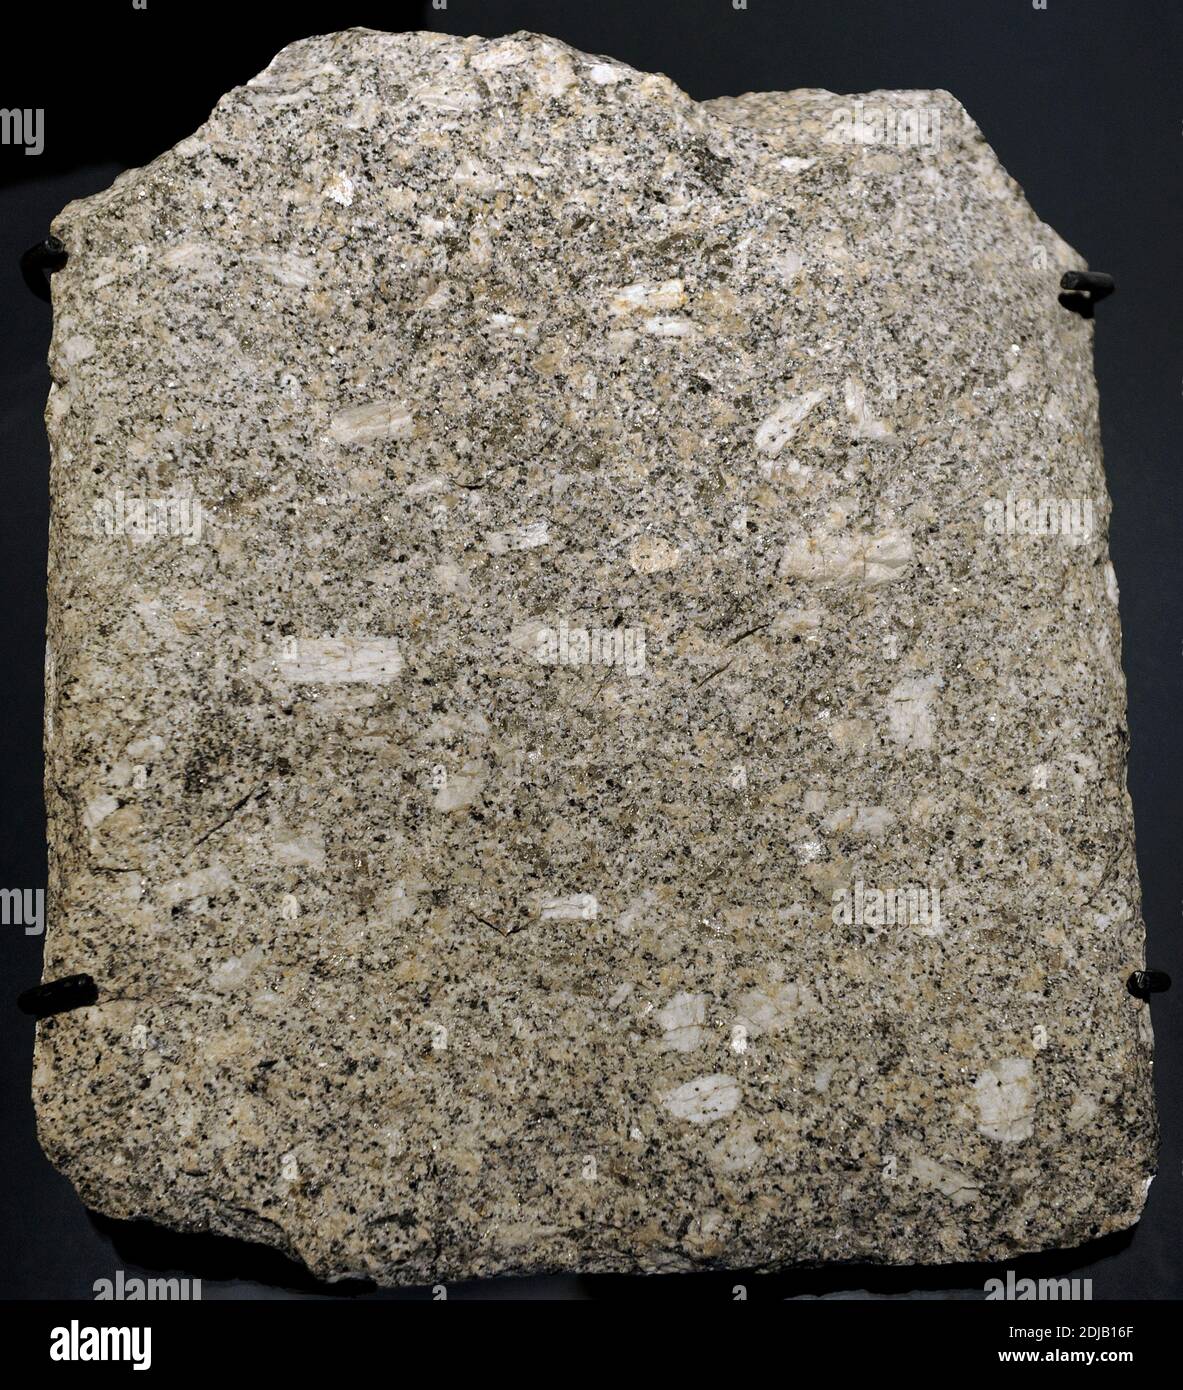 Granit. Grobkörniges ignees Gestein, das hauptsächlich aus Quarz, Alkali-Feldspat und Plagioklase besteht. Fragment aus Schneeberg, Deutschland. Naturhistorisches Museum, Berlin, Deutschland. Stockfoto